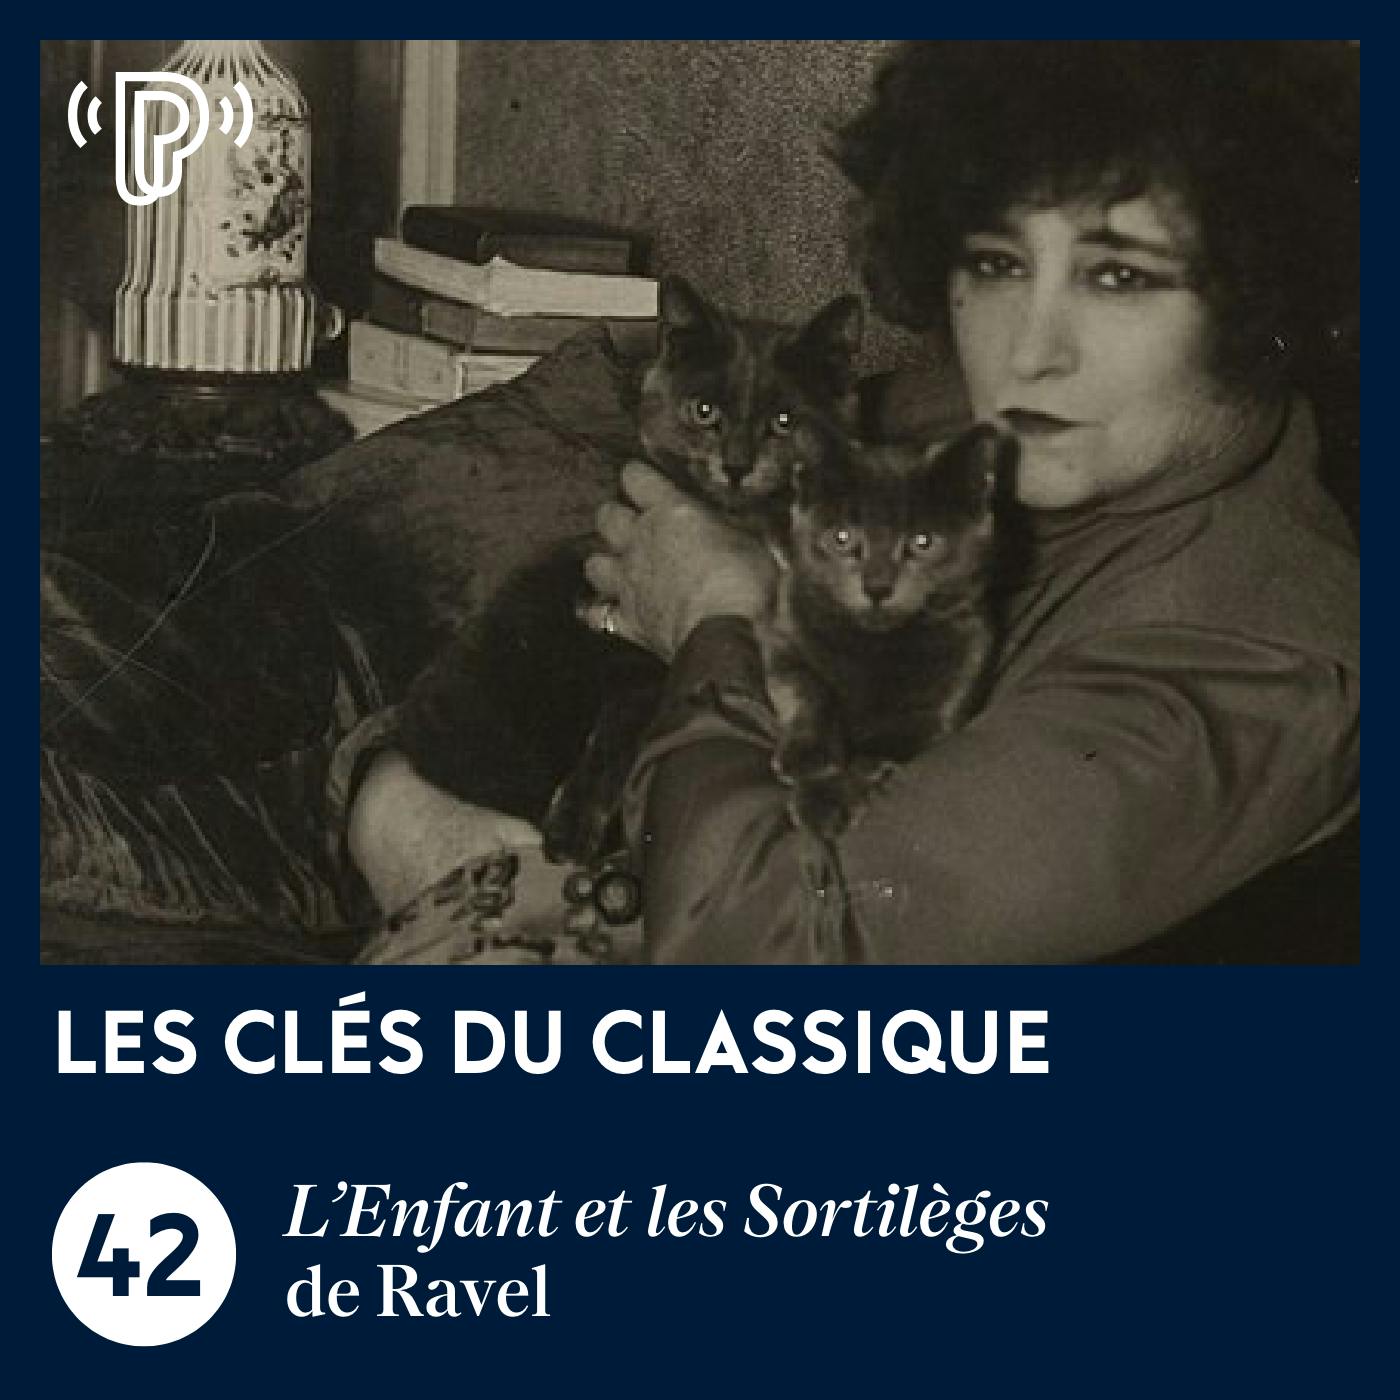 L'Enfant et les Sortilèges de Ravel | Les Clés du classique #42